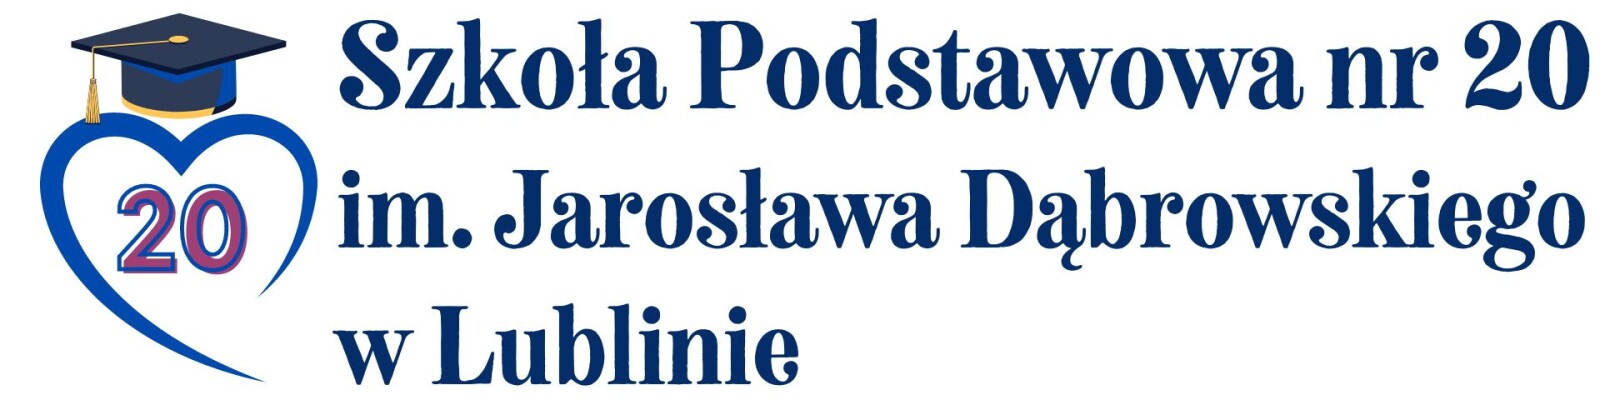 Logo Szkoła Podstawowa nr 20 w Lublinie